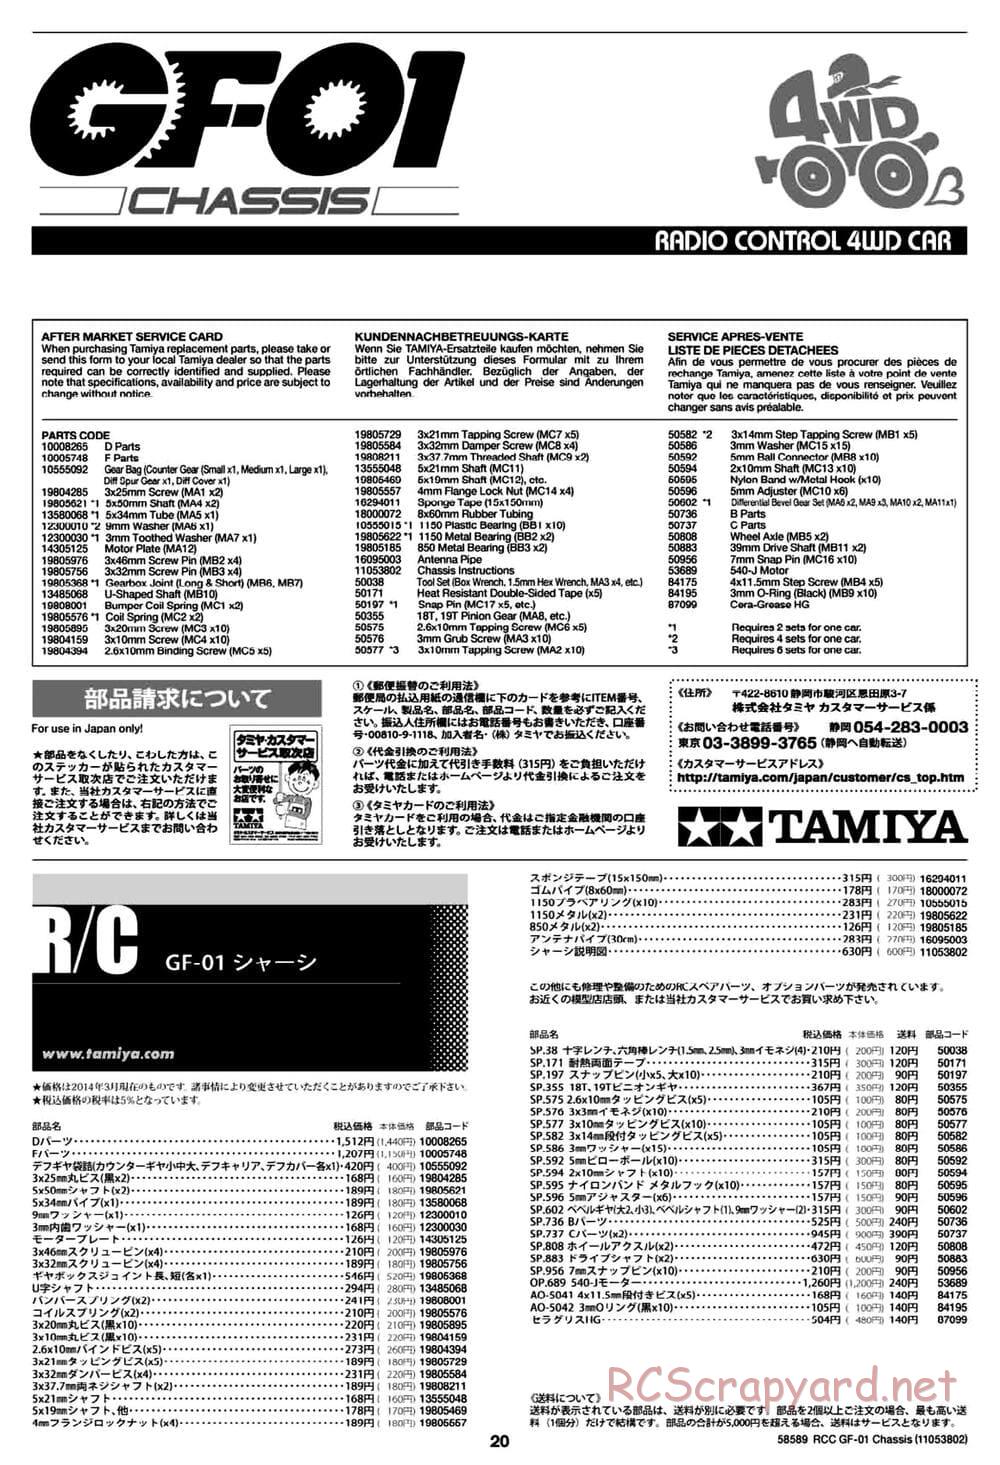 Tamiya - GF-01 Chassis - Manual - Page 20